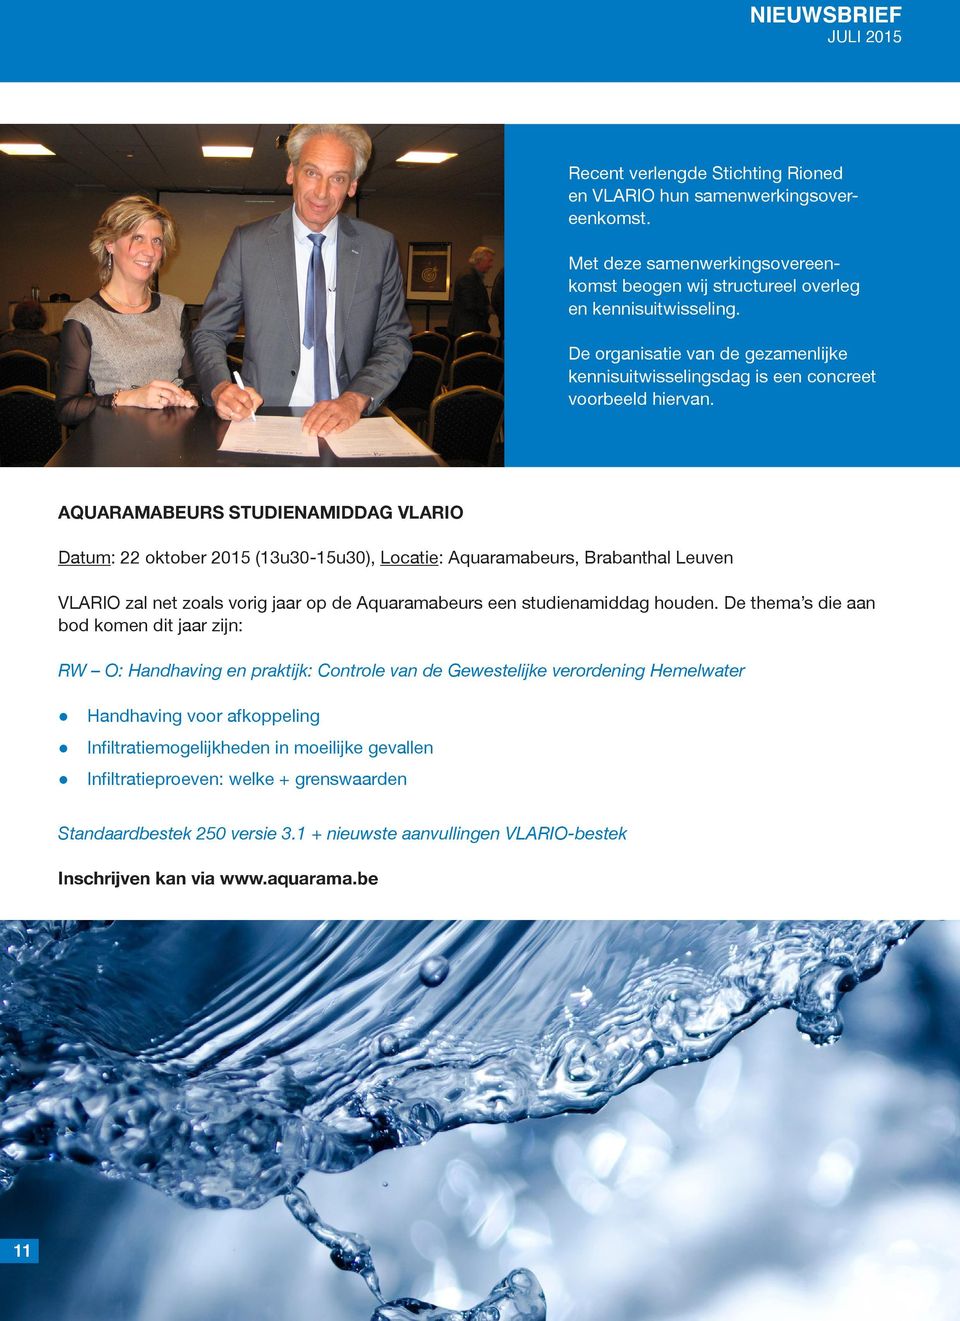 AQUARAMABEURS STUDIENAMIDDAG VLARIO Datum: 22 oktober 2015 (13u30-15u30), Locatie: Aquaramabeurs, Brabanthal Leuven VLARIO zal net zoals vorig jaar op de Aquaramabeurs een studienamiddag houden.